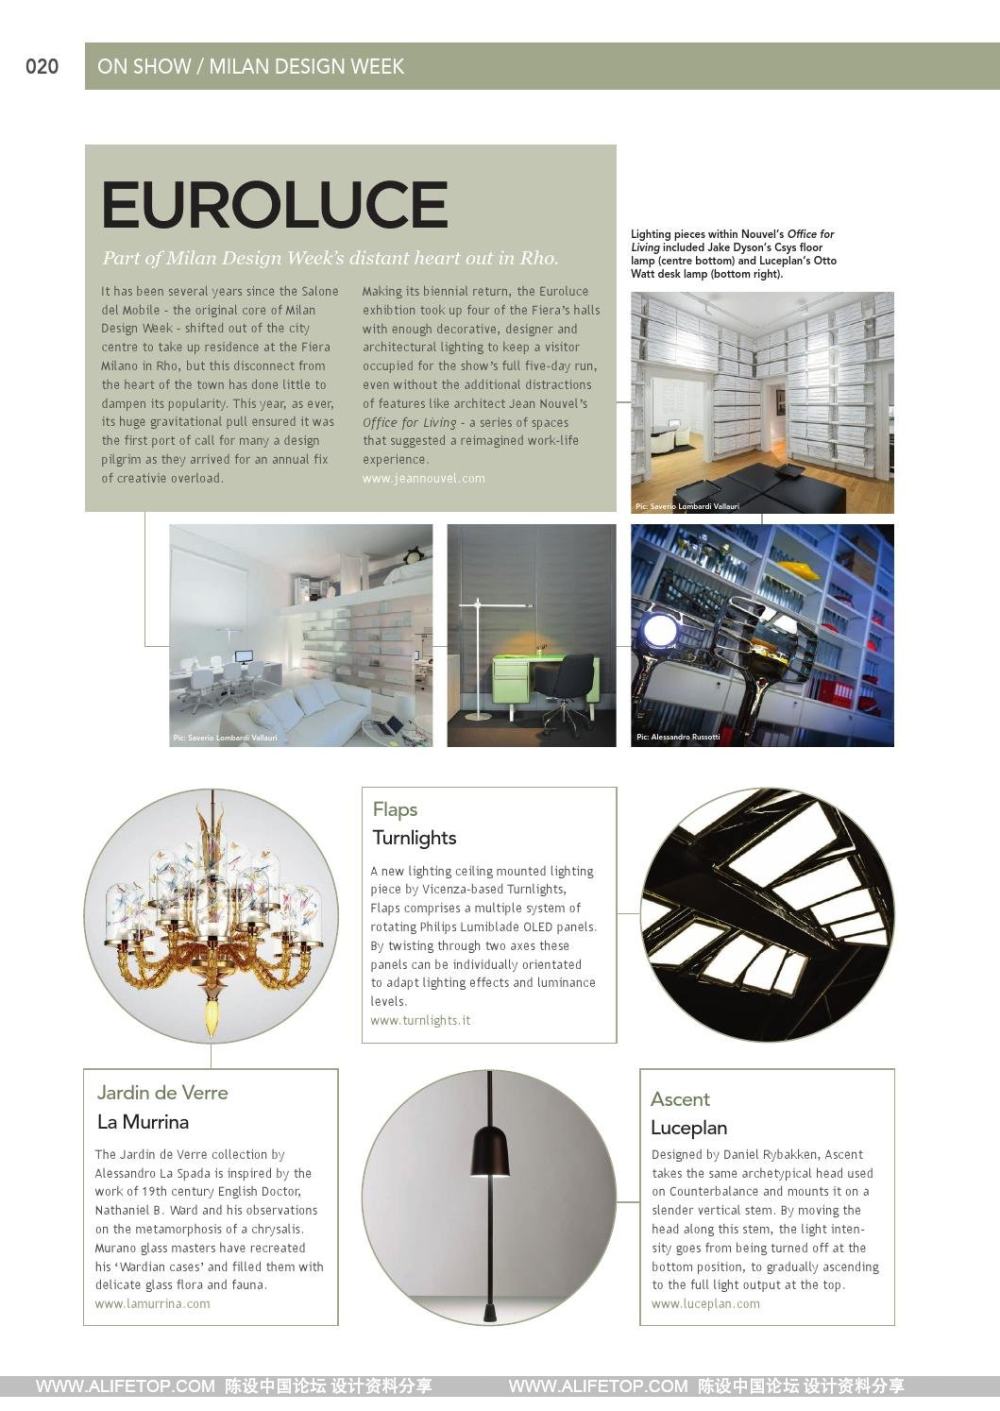 darc-3灯具照明设计杂志_darc-3灯具照明设计杂志 (20).jpg